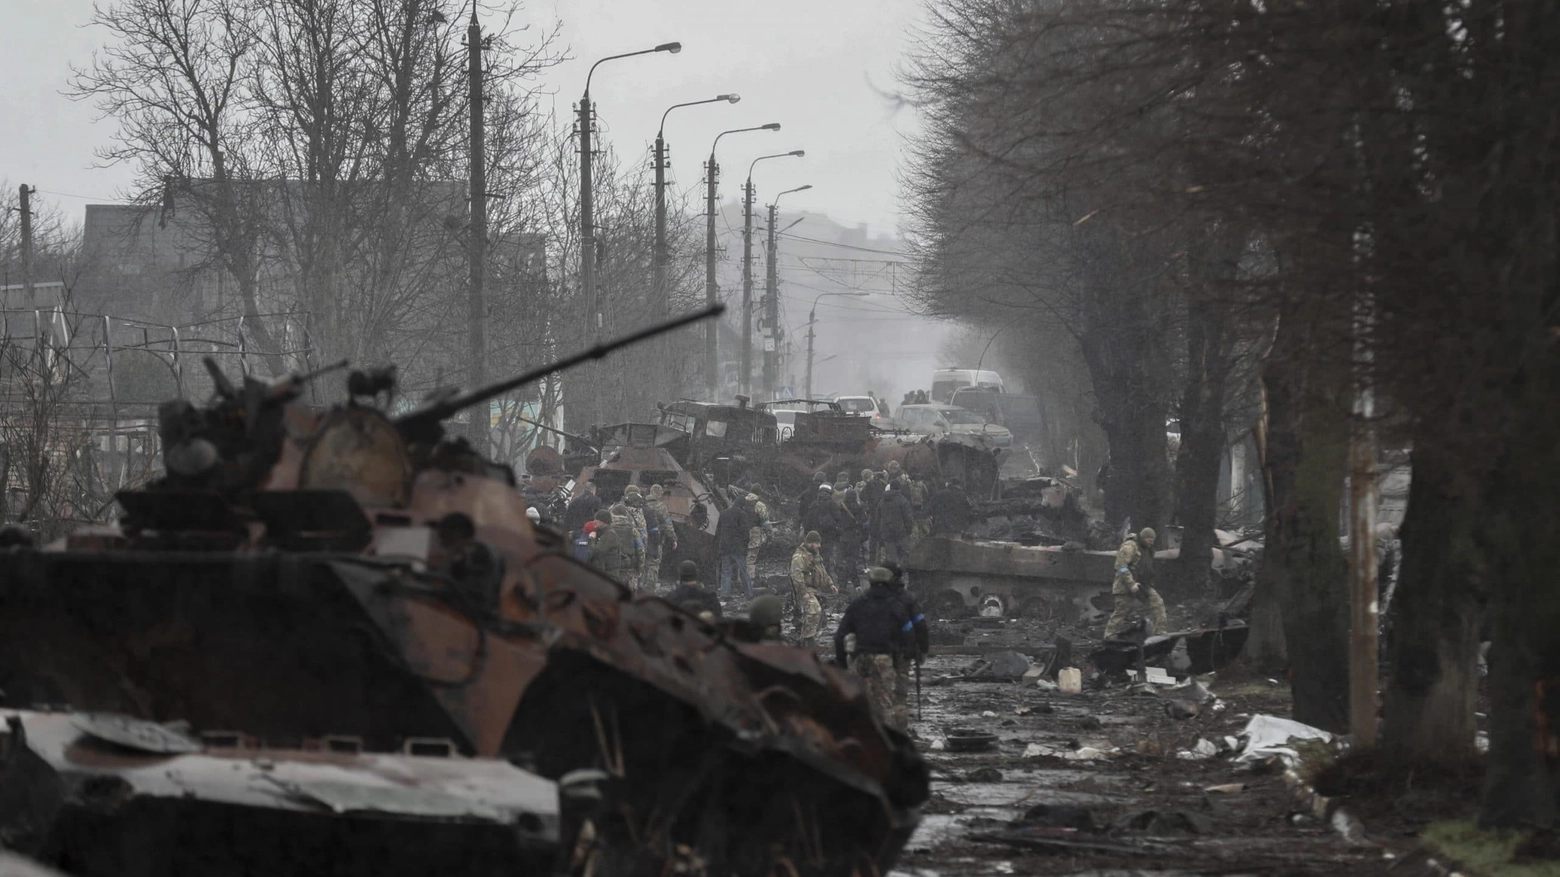 Soldati ucraini ispezionano un convoglio di carri armati russi distrutti a Bucha, Ucraina (Foto Ansa / EPA / Atef Safadi)